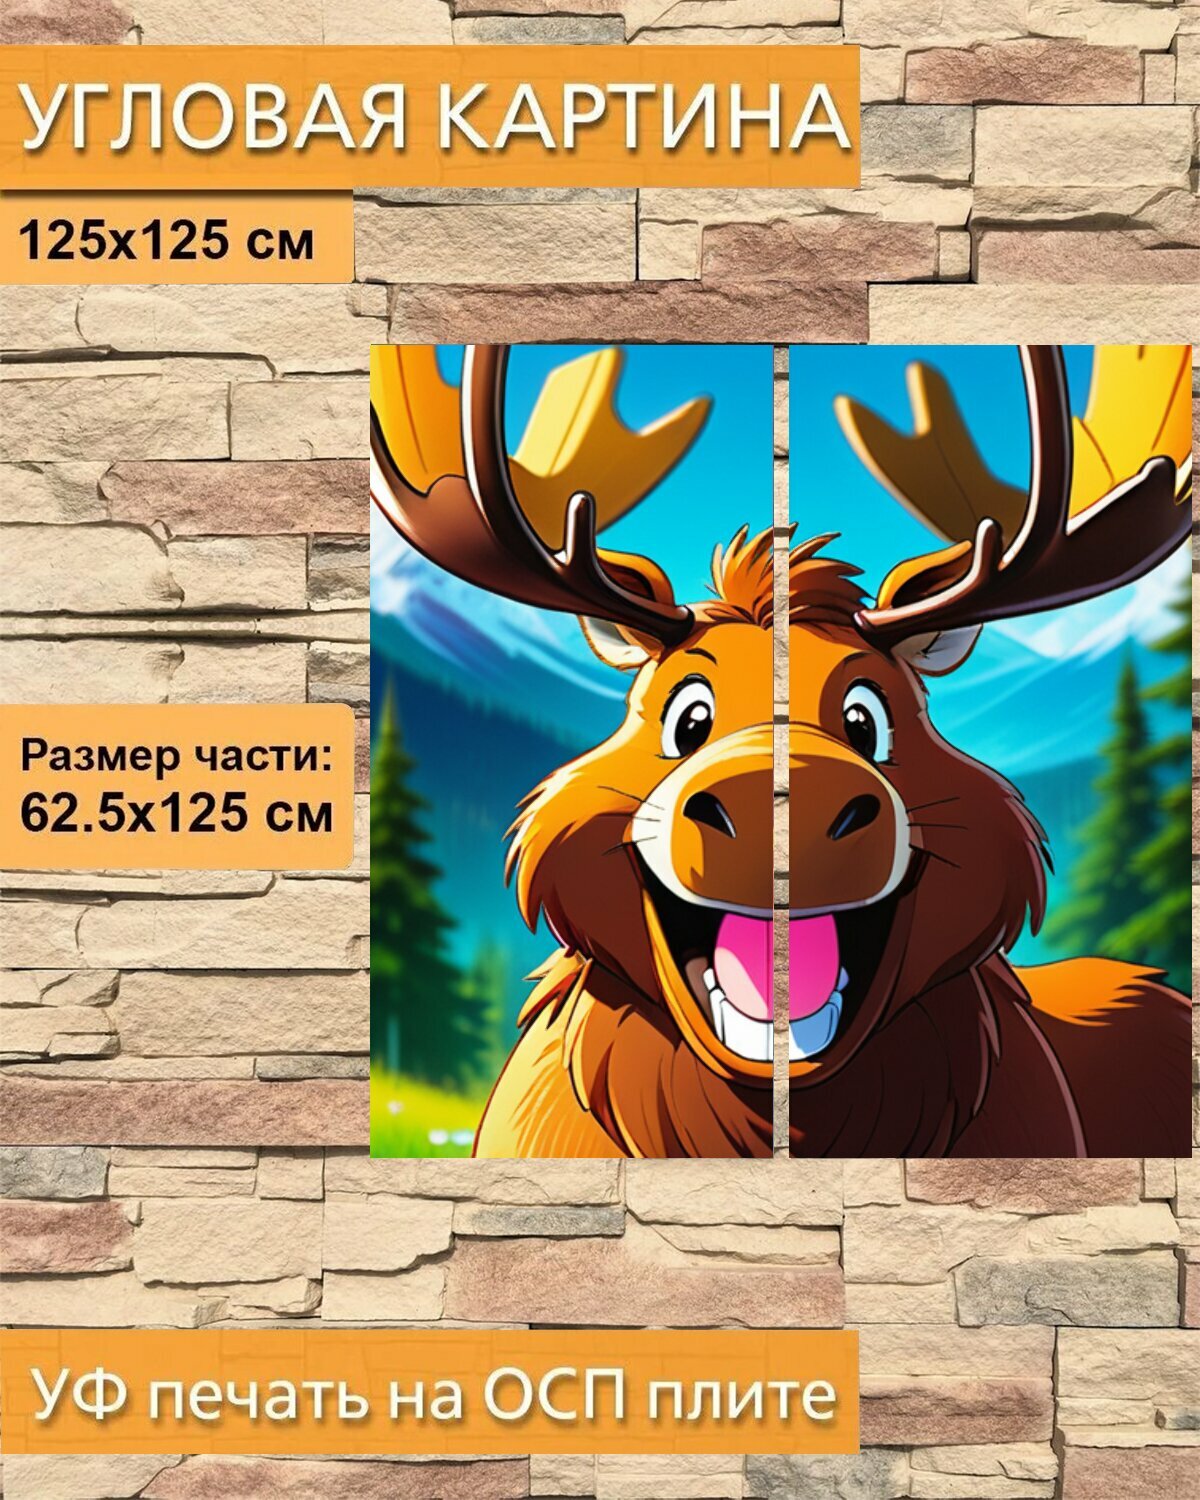 Модульная картина на ОСП В детскую комнату "Животные, звери, лось улыбается" 125x125 см. 2 части для интерьера на стену